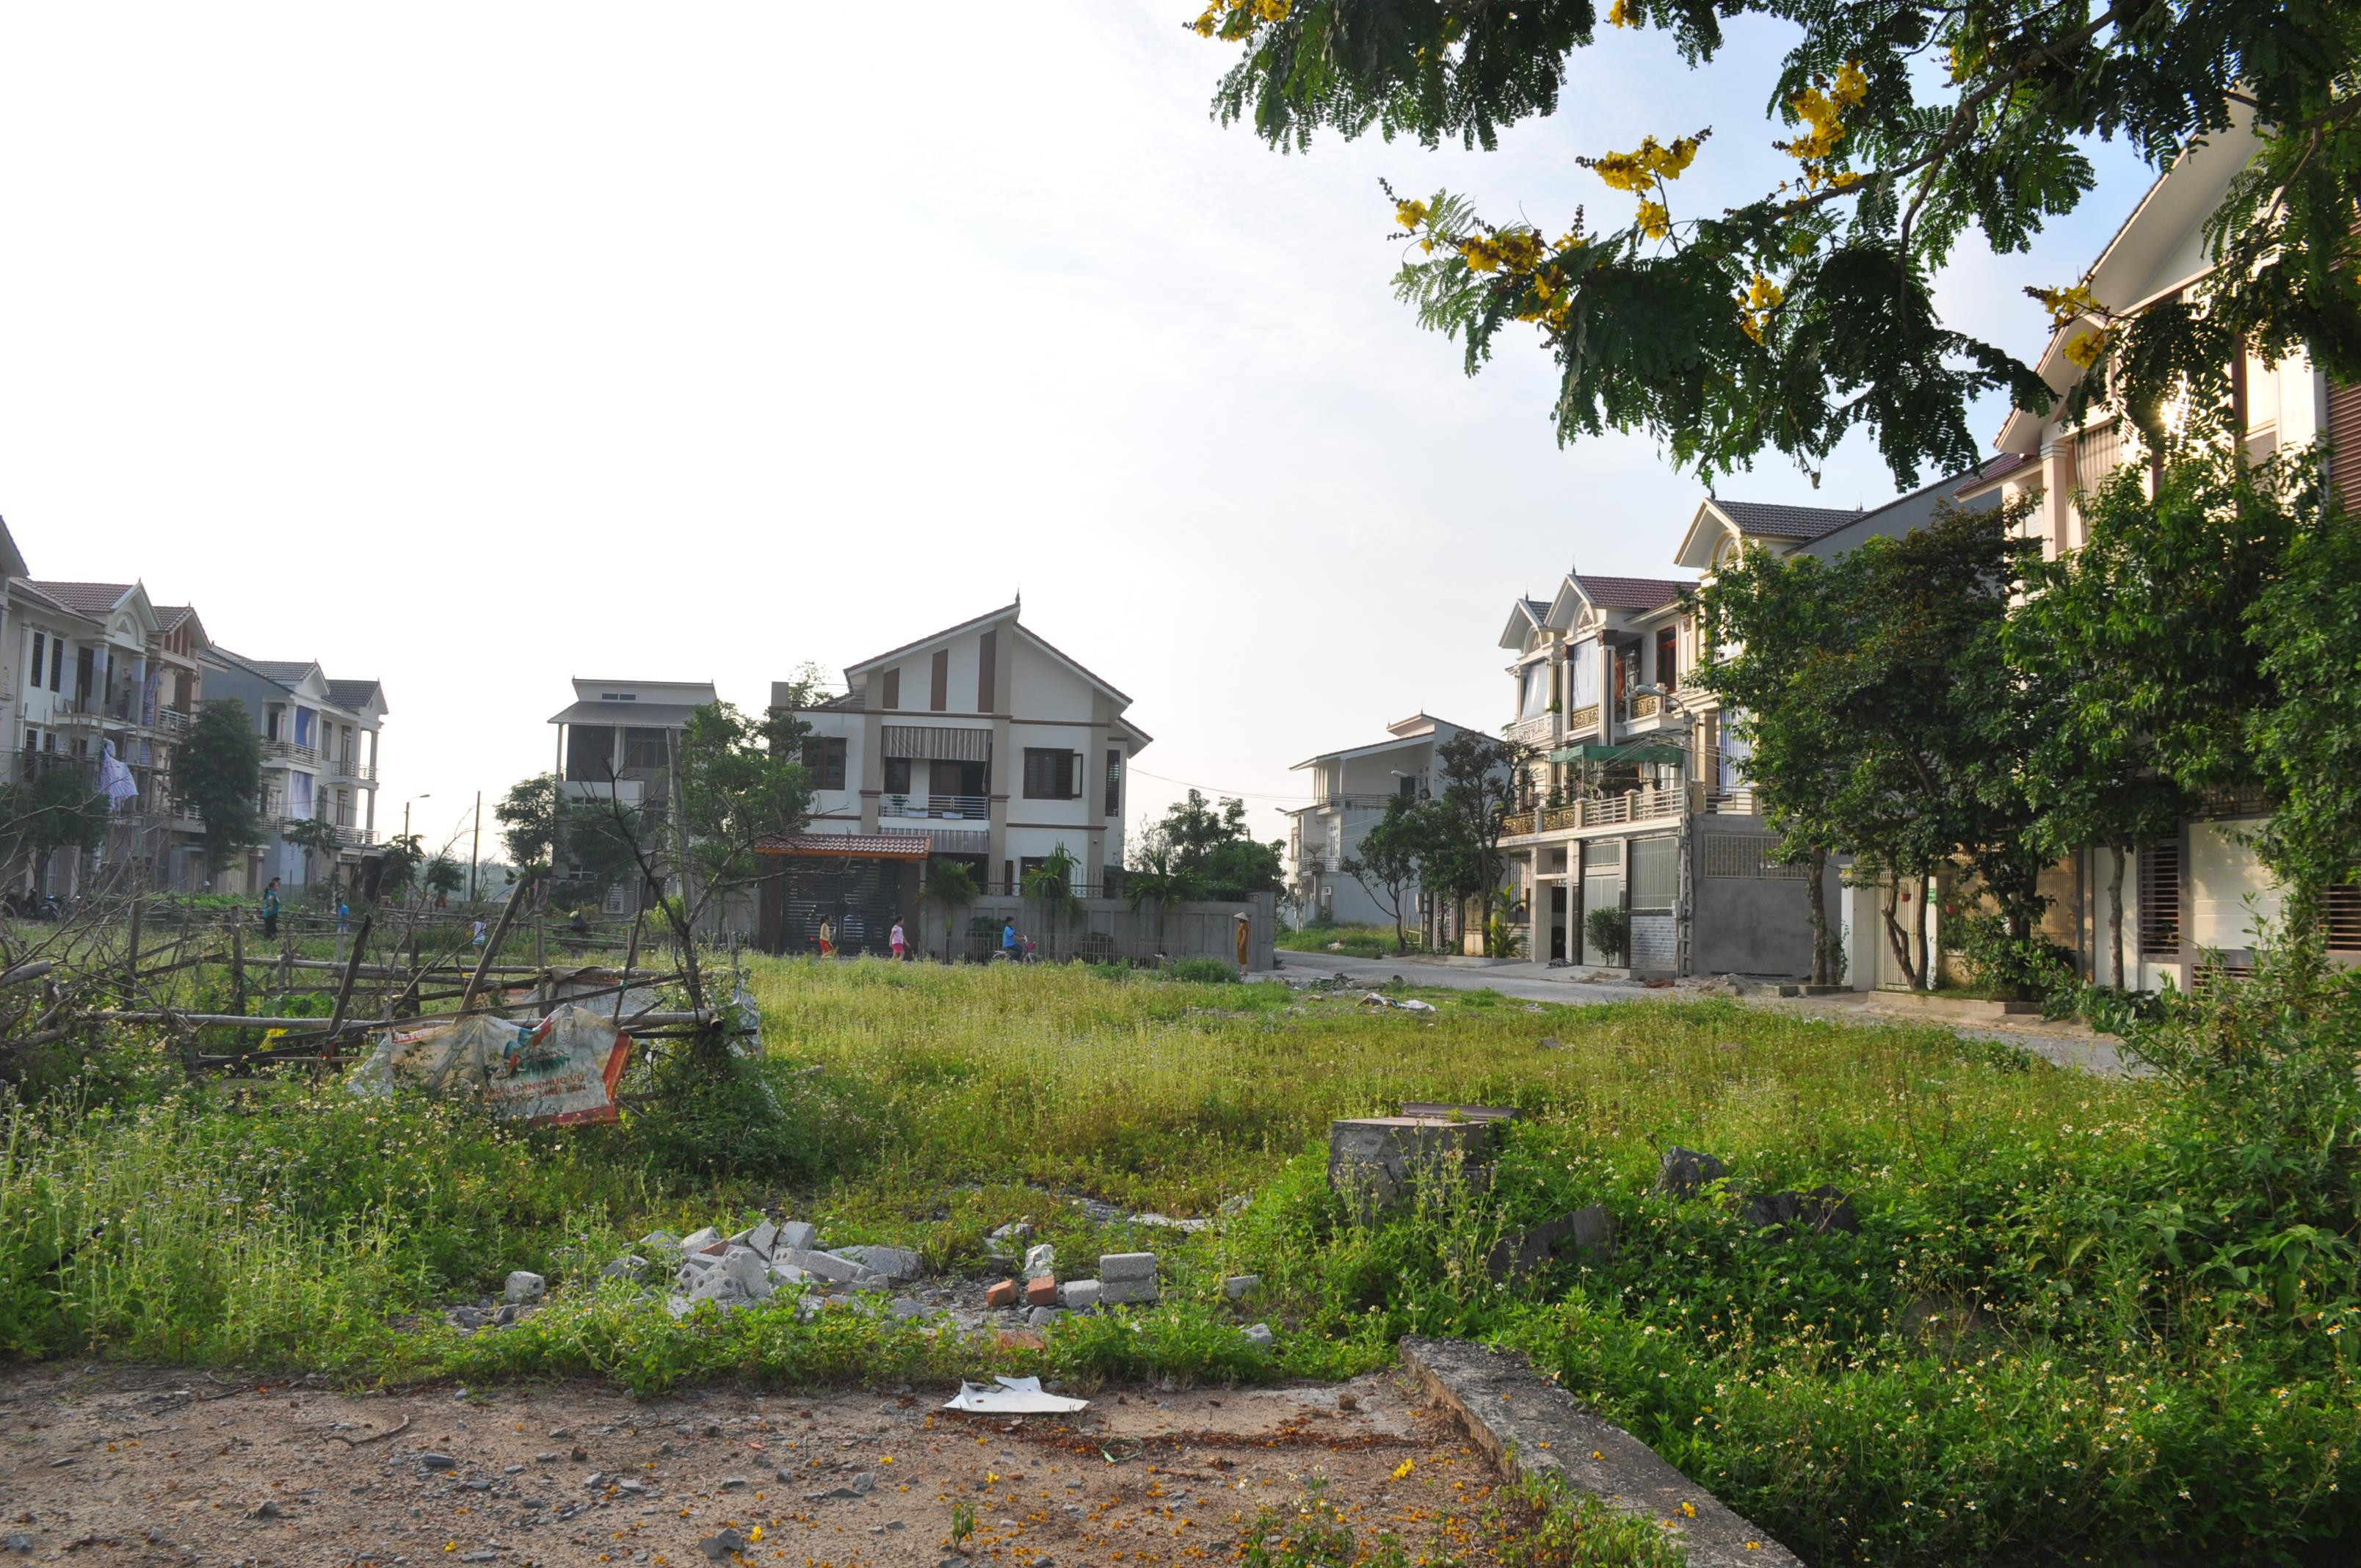 Nhiều lô đất quy hoạch tại một dự án bất động sản ở thành phố Vinh chưa được xây dựng nhà ở. Ảnh: Việt Phương